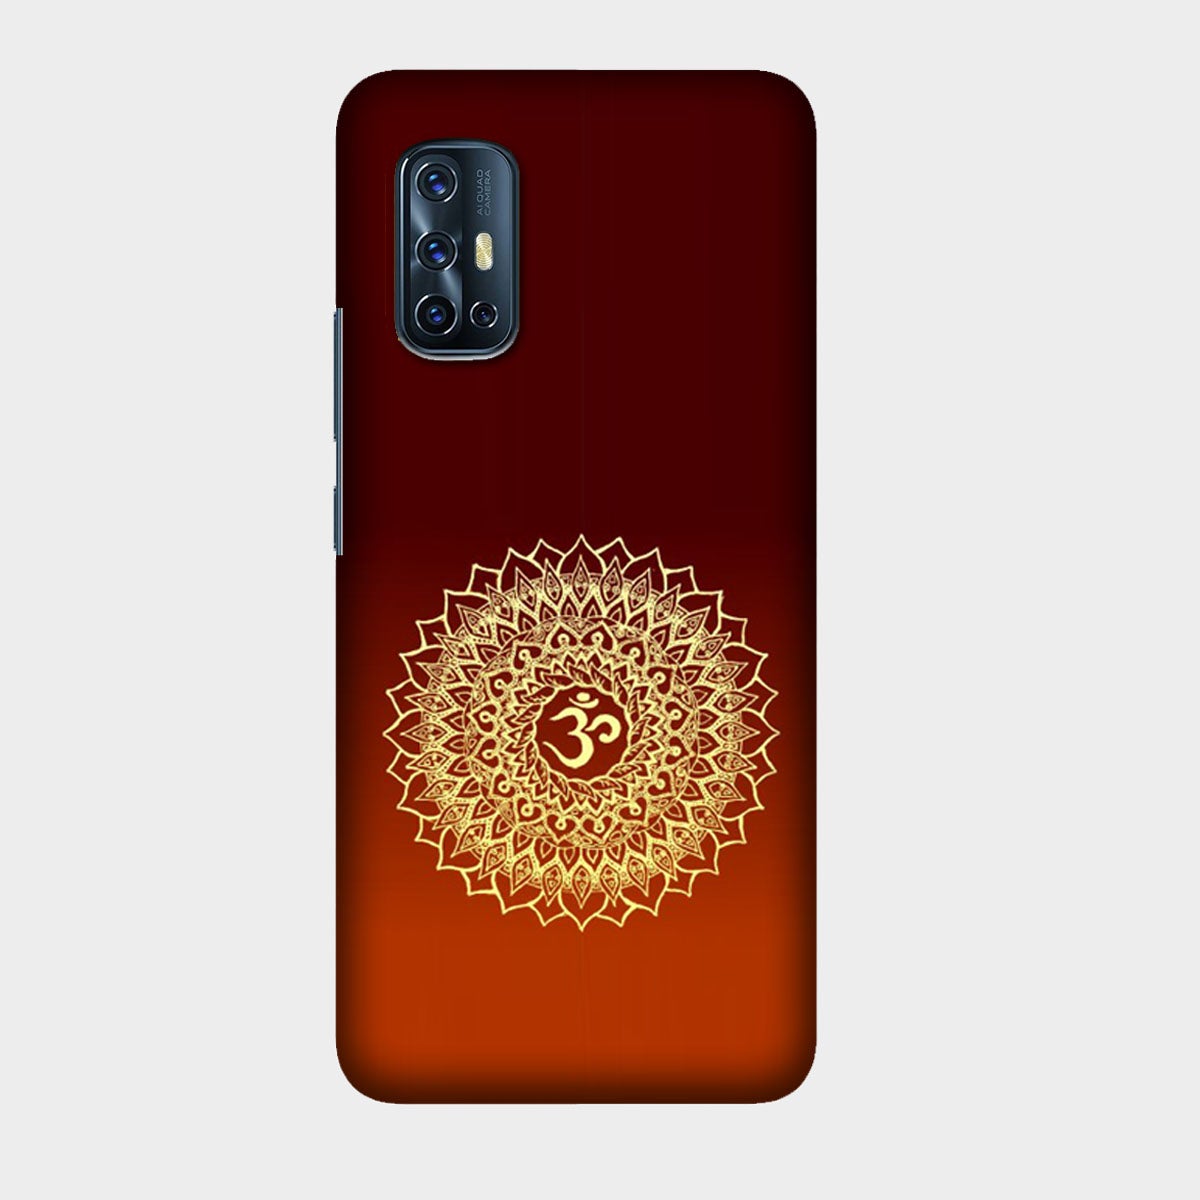 Om Namo Narayana - Mobile Phone Cover - Hard Case - Vivo